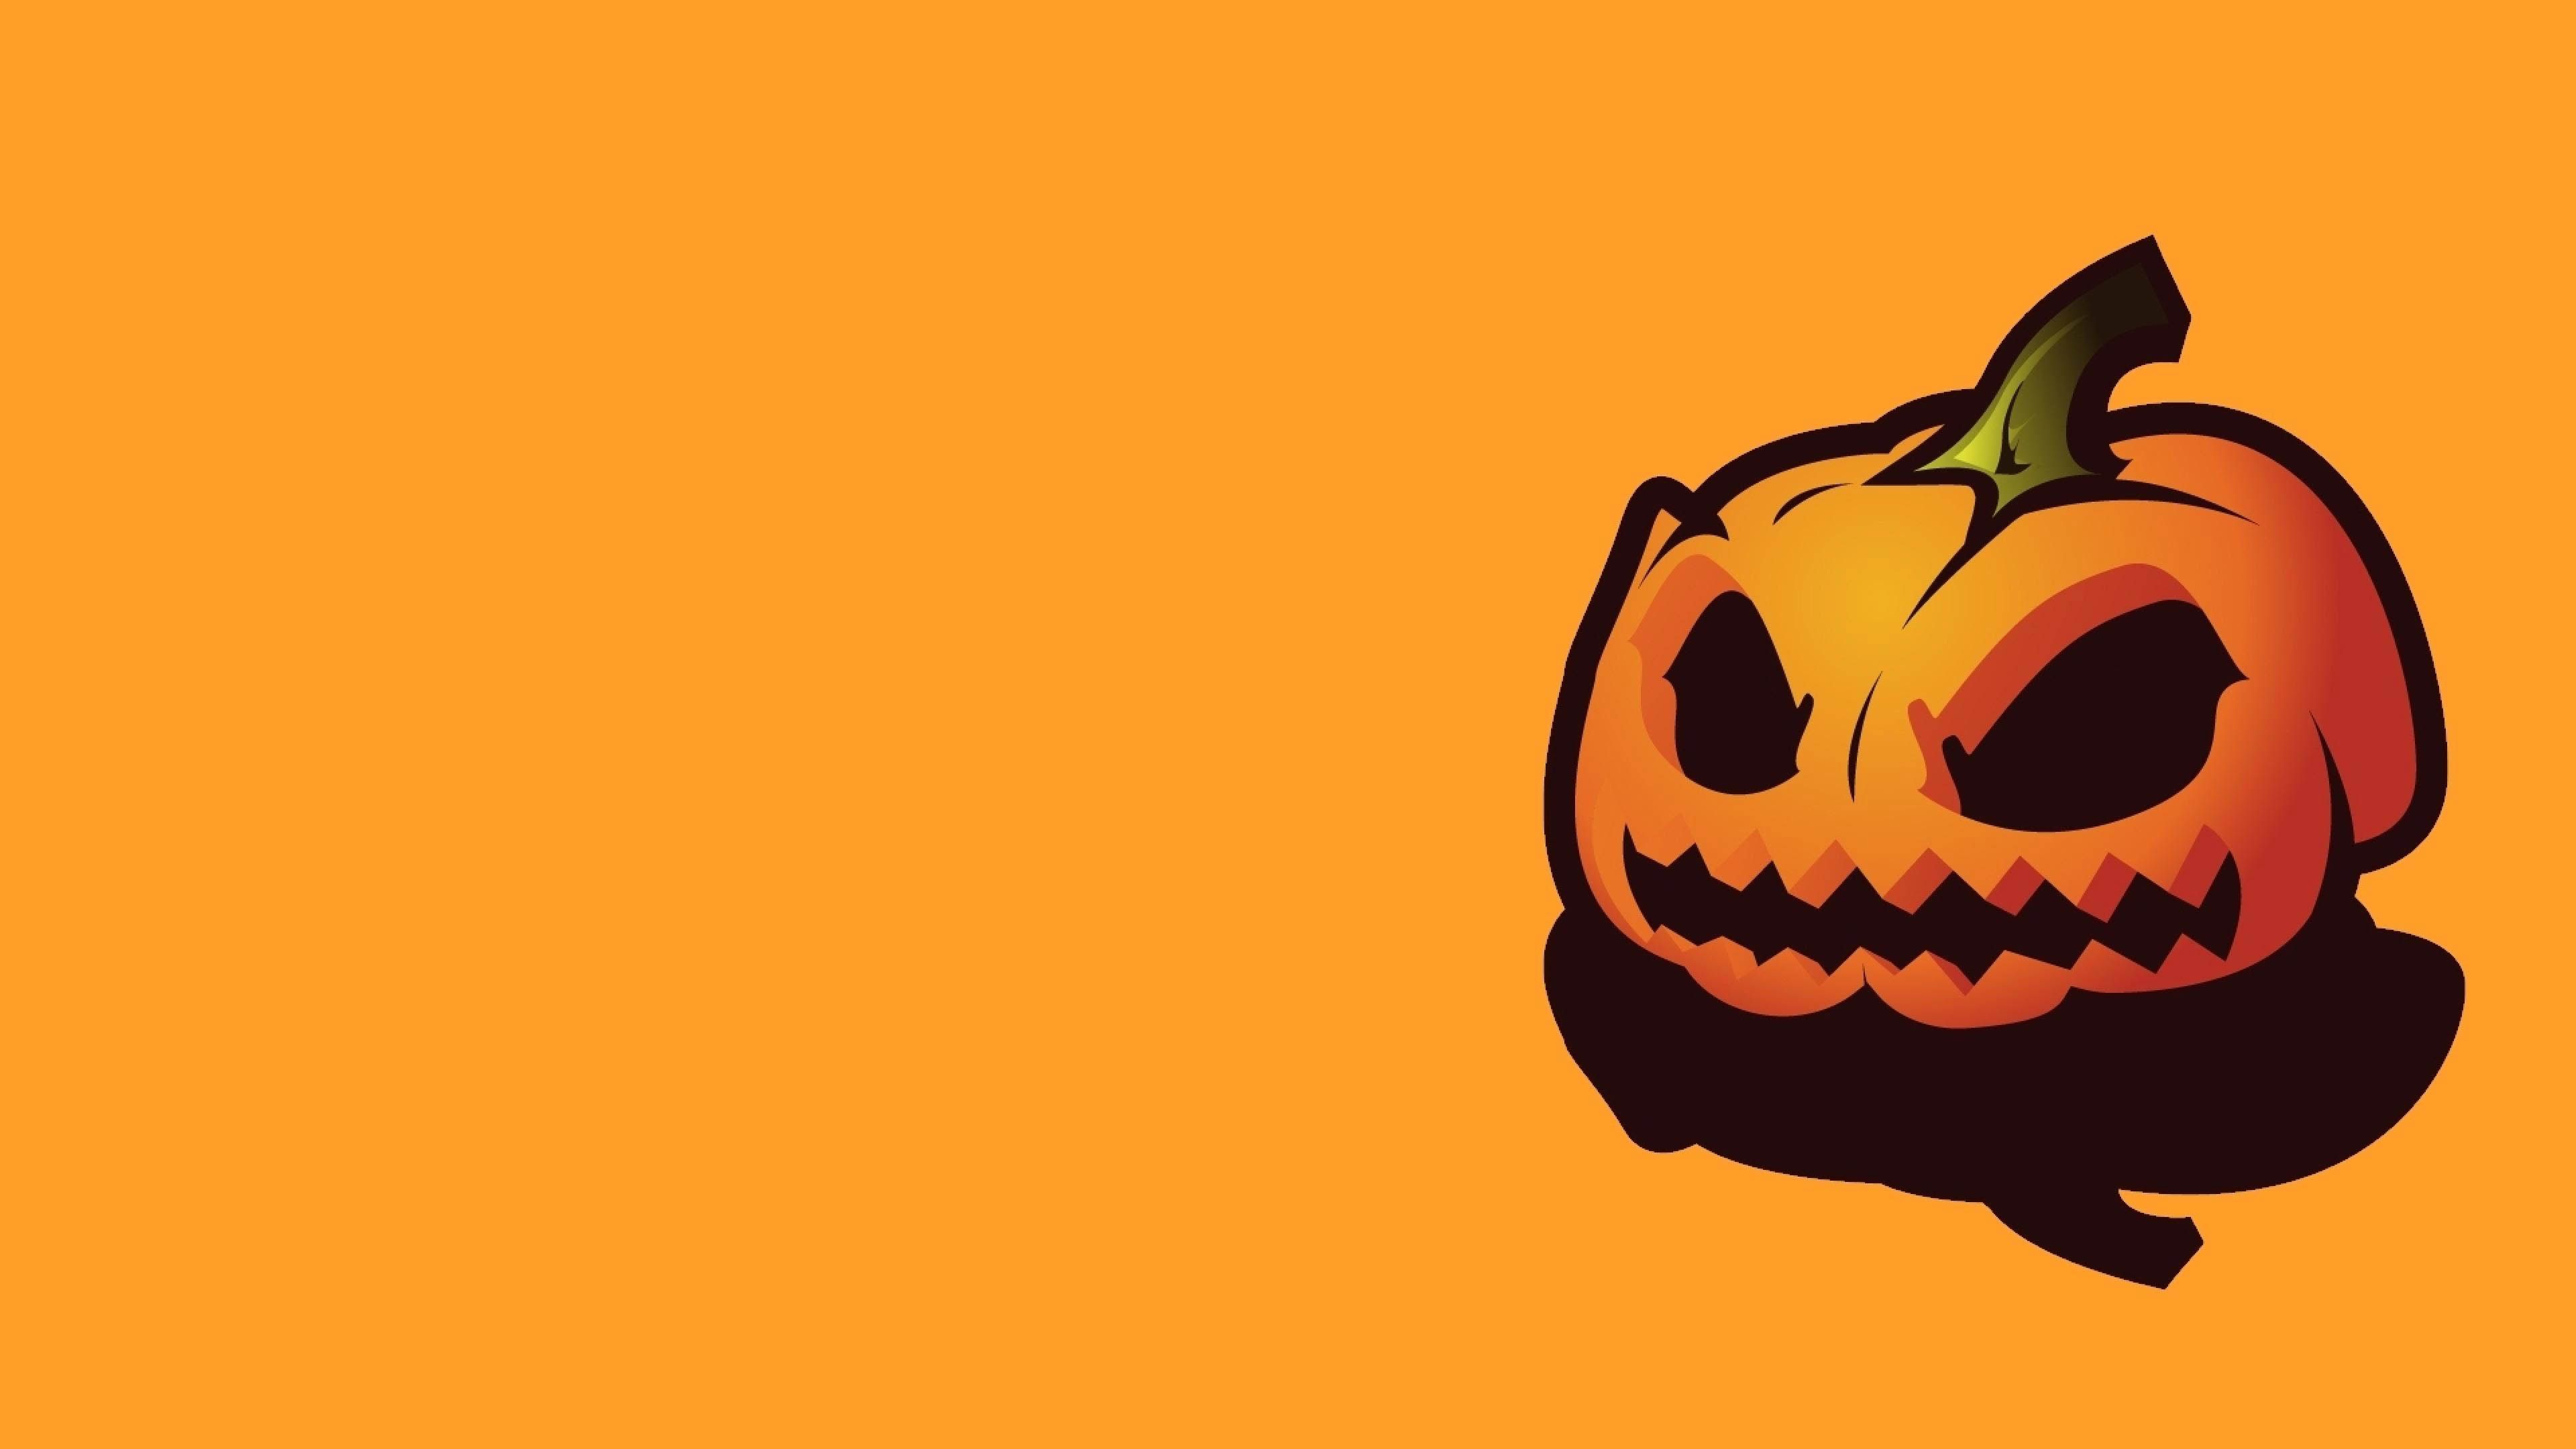 Chào mừng đến với thiên đường của những phông nền Halloween dễ thương! Đây là một bộ sưu tập phông nền sóng gió về Halloween, với những hình ảnh đáng yêu về bí ngô, ma quái, và nhiều loài vật Halloween khác nhau. Hãy tải xuống và sử dụng những mẫu phông nền này để trang trí website hoặc các thiết bị khác.